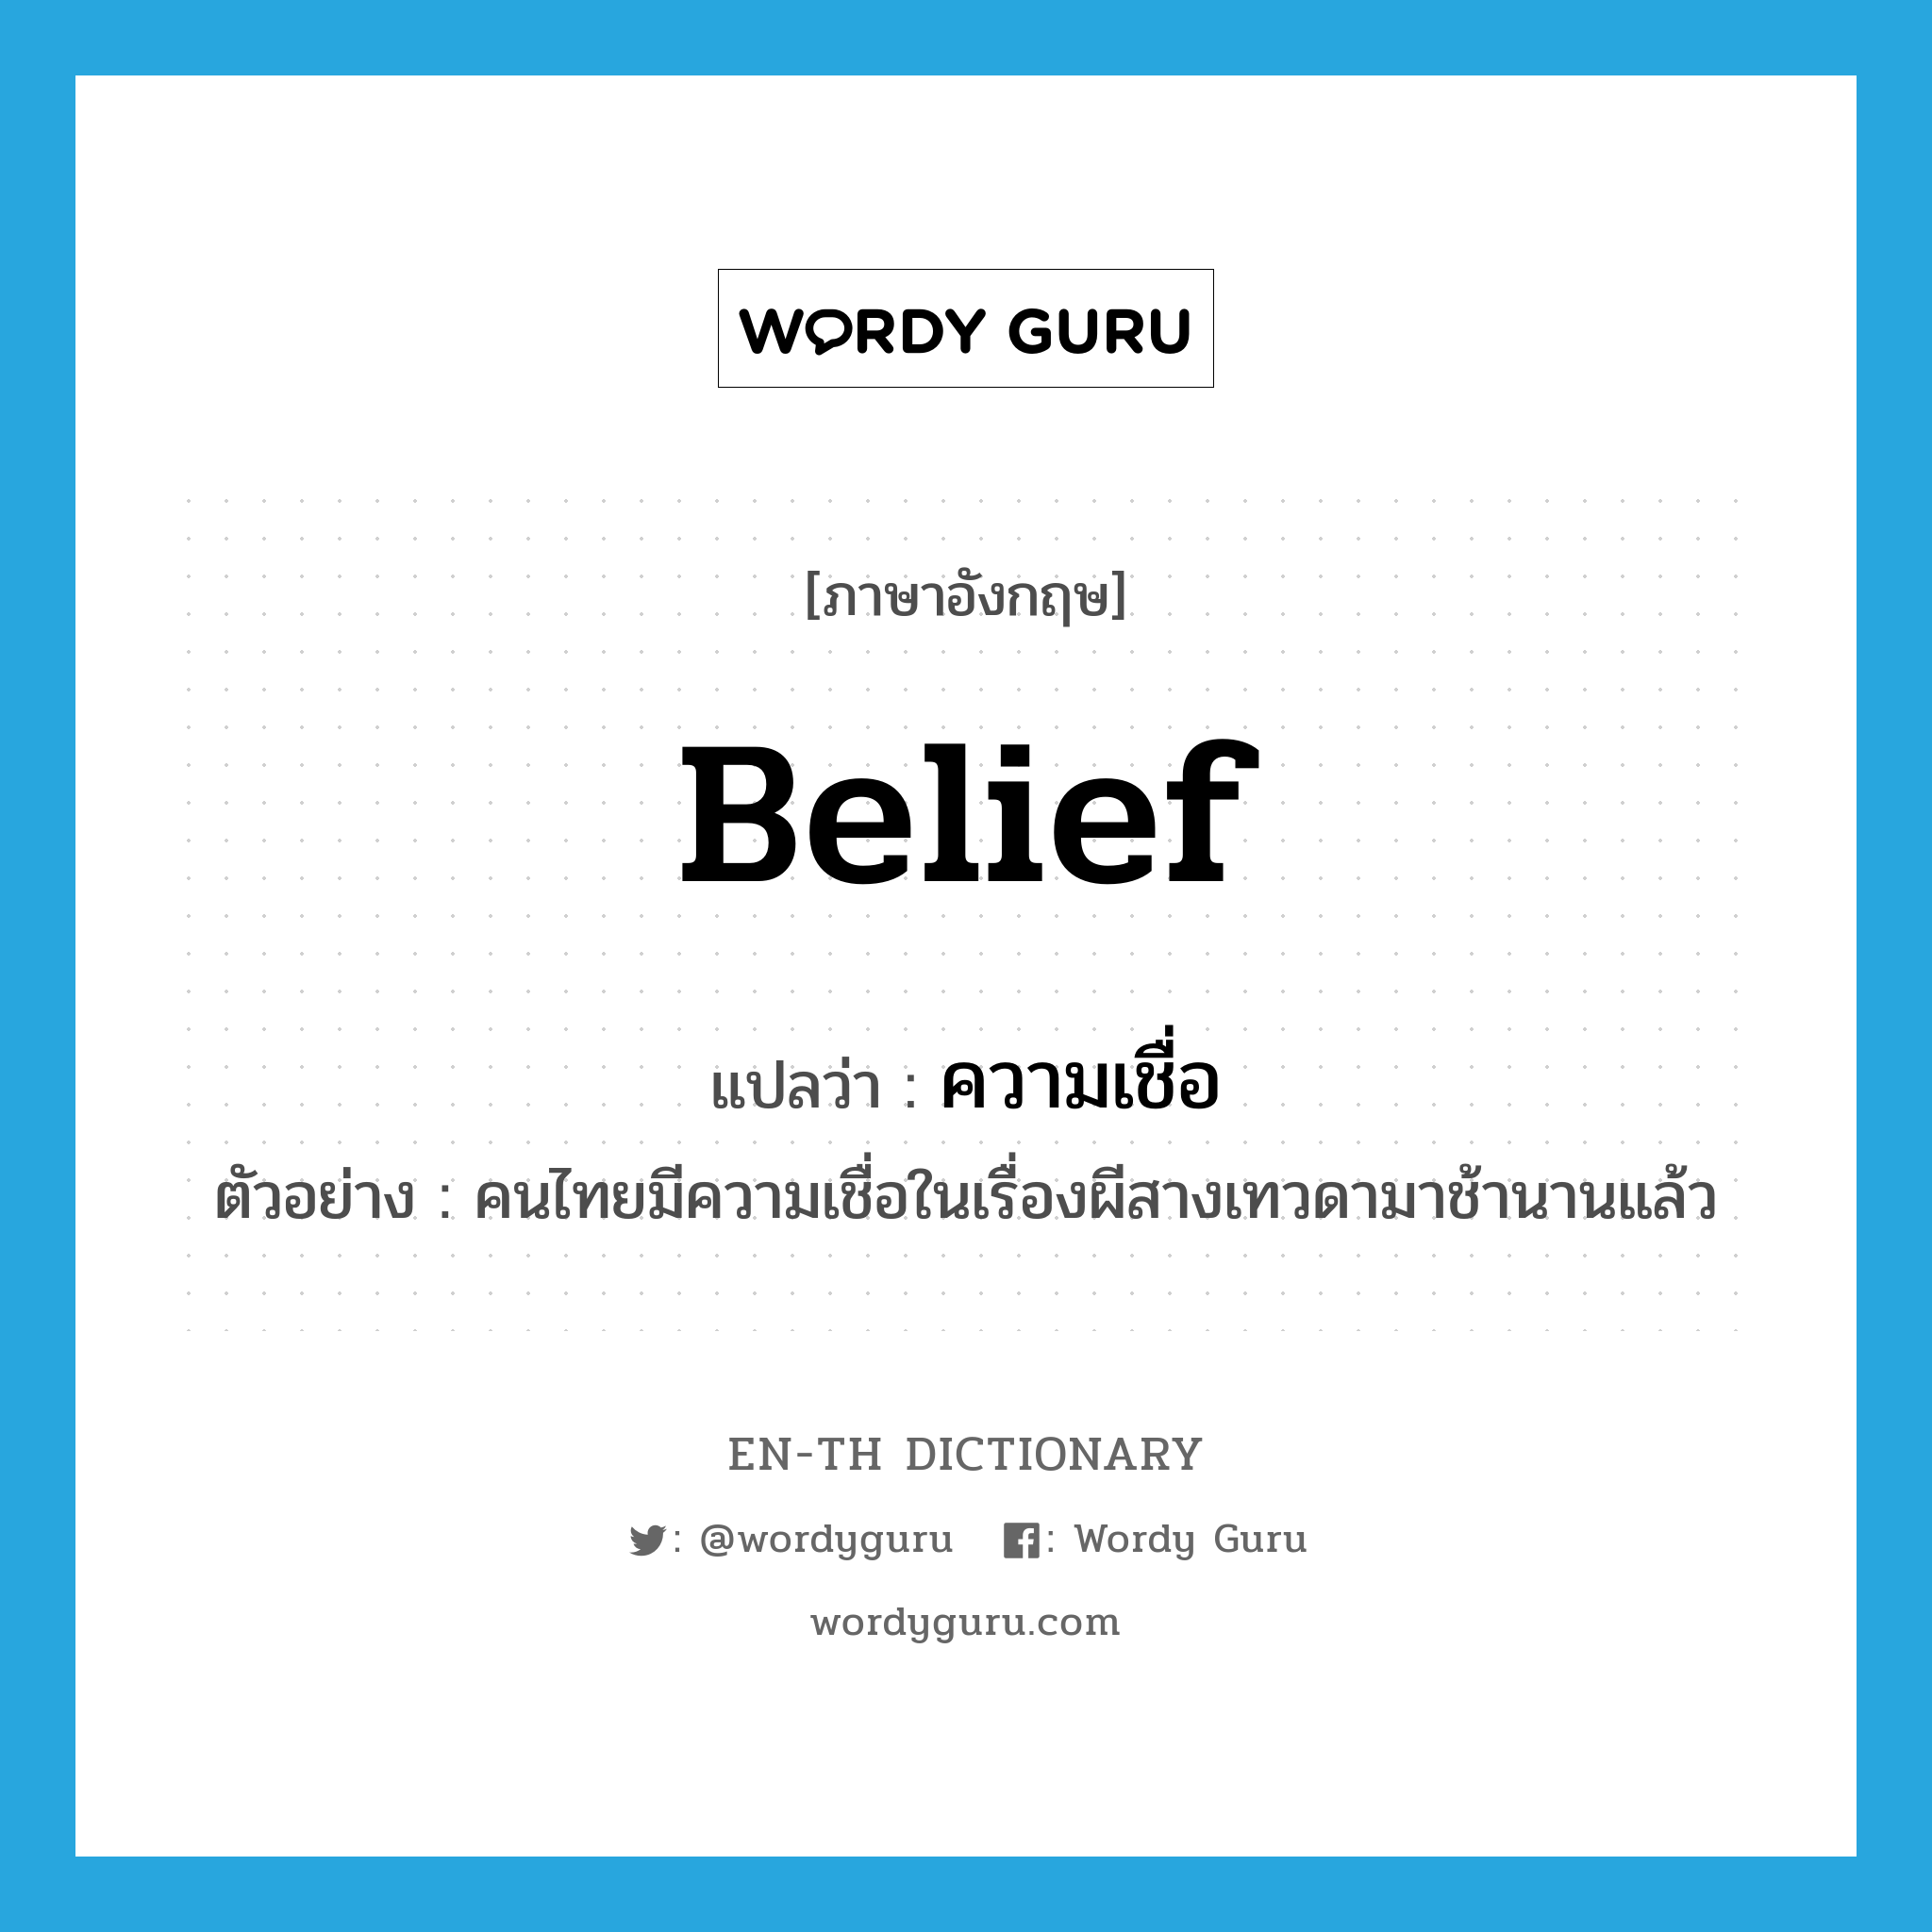 ความเชื่อ ภาษาอังกฤษ?, คำศัพท์ภาษาอังกฤษ ความเชื่อ แปลว่า belief ประเภท N ตัวอย่าง คนไทยมีความเชื่อในเรื่องผีสางเทวดามาช้านานแล้ว หมวด N